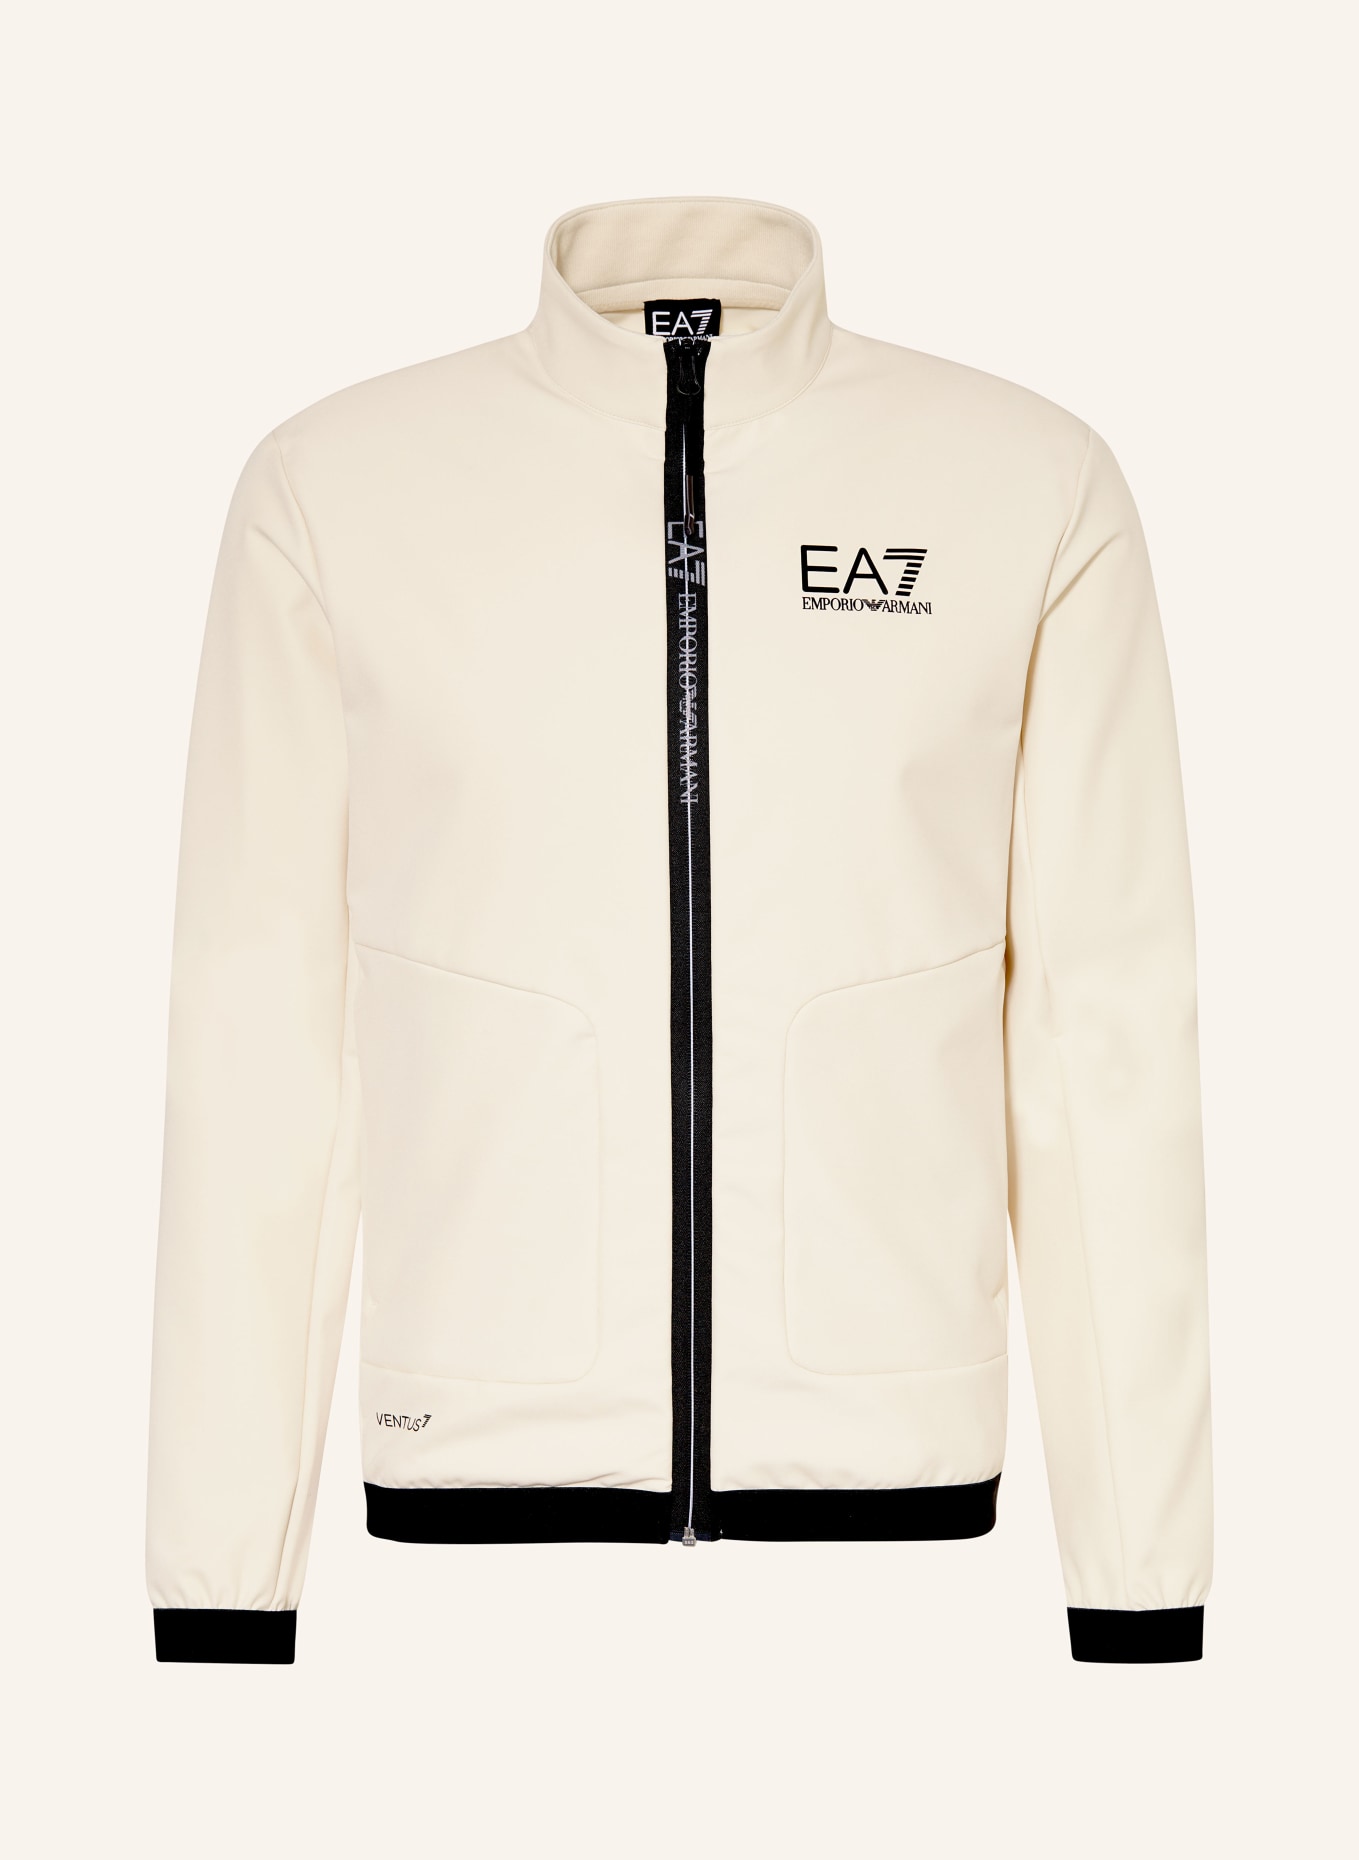 EA7 EMPORIO ARMANI Training jacket, Color: CREAM (Image 1)